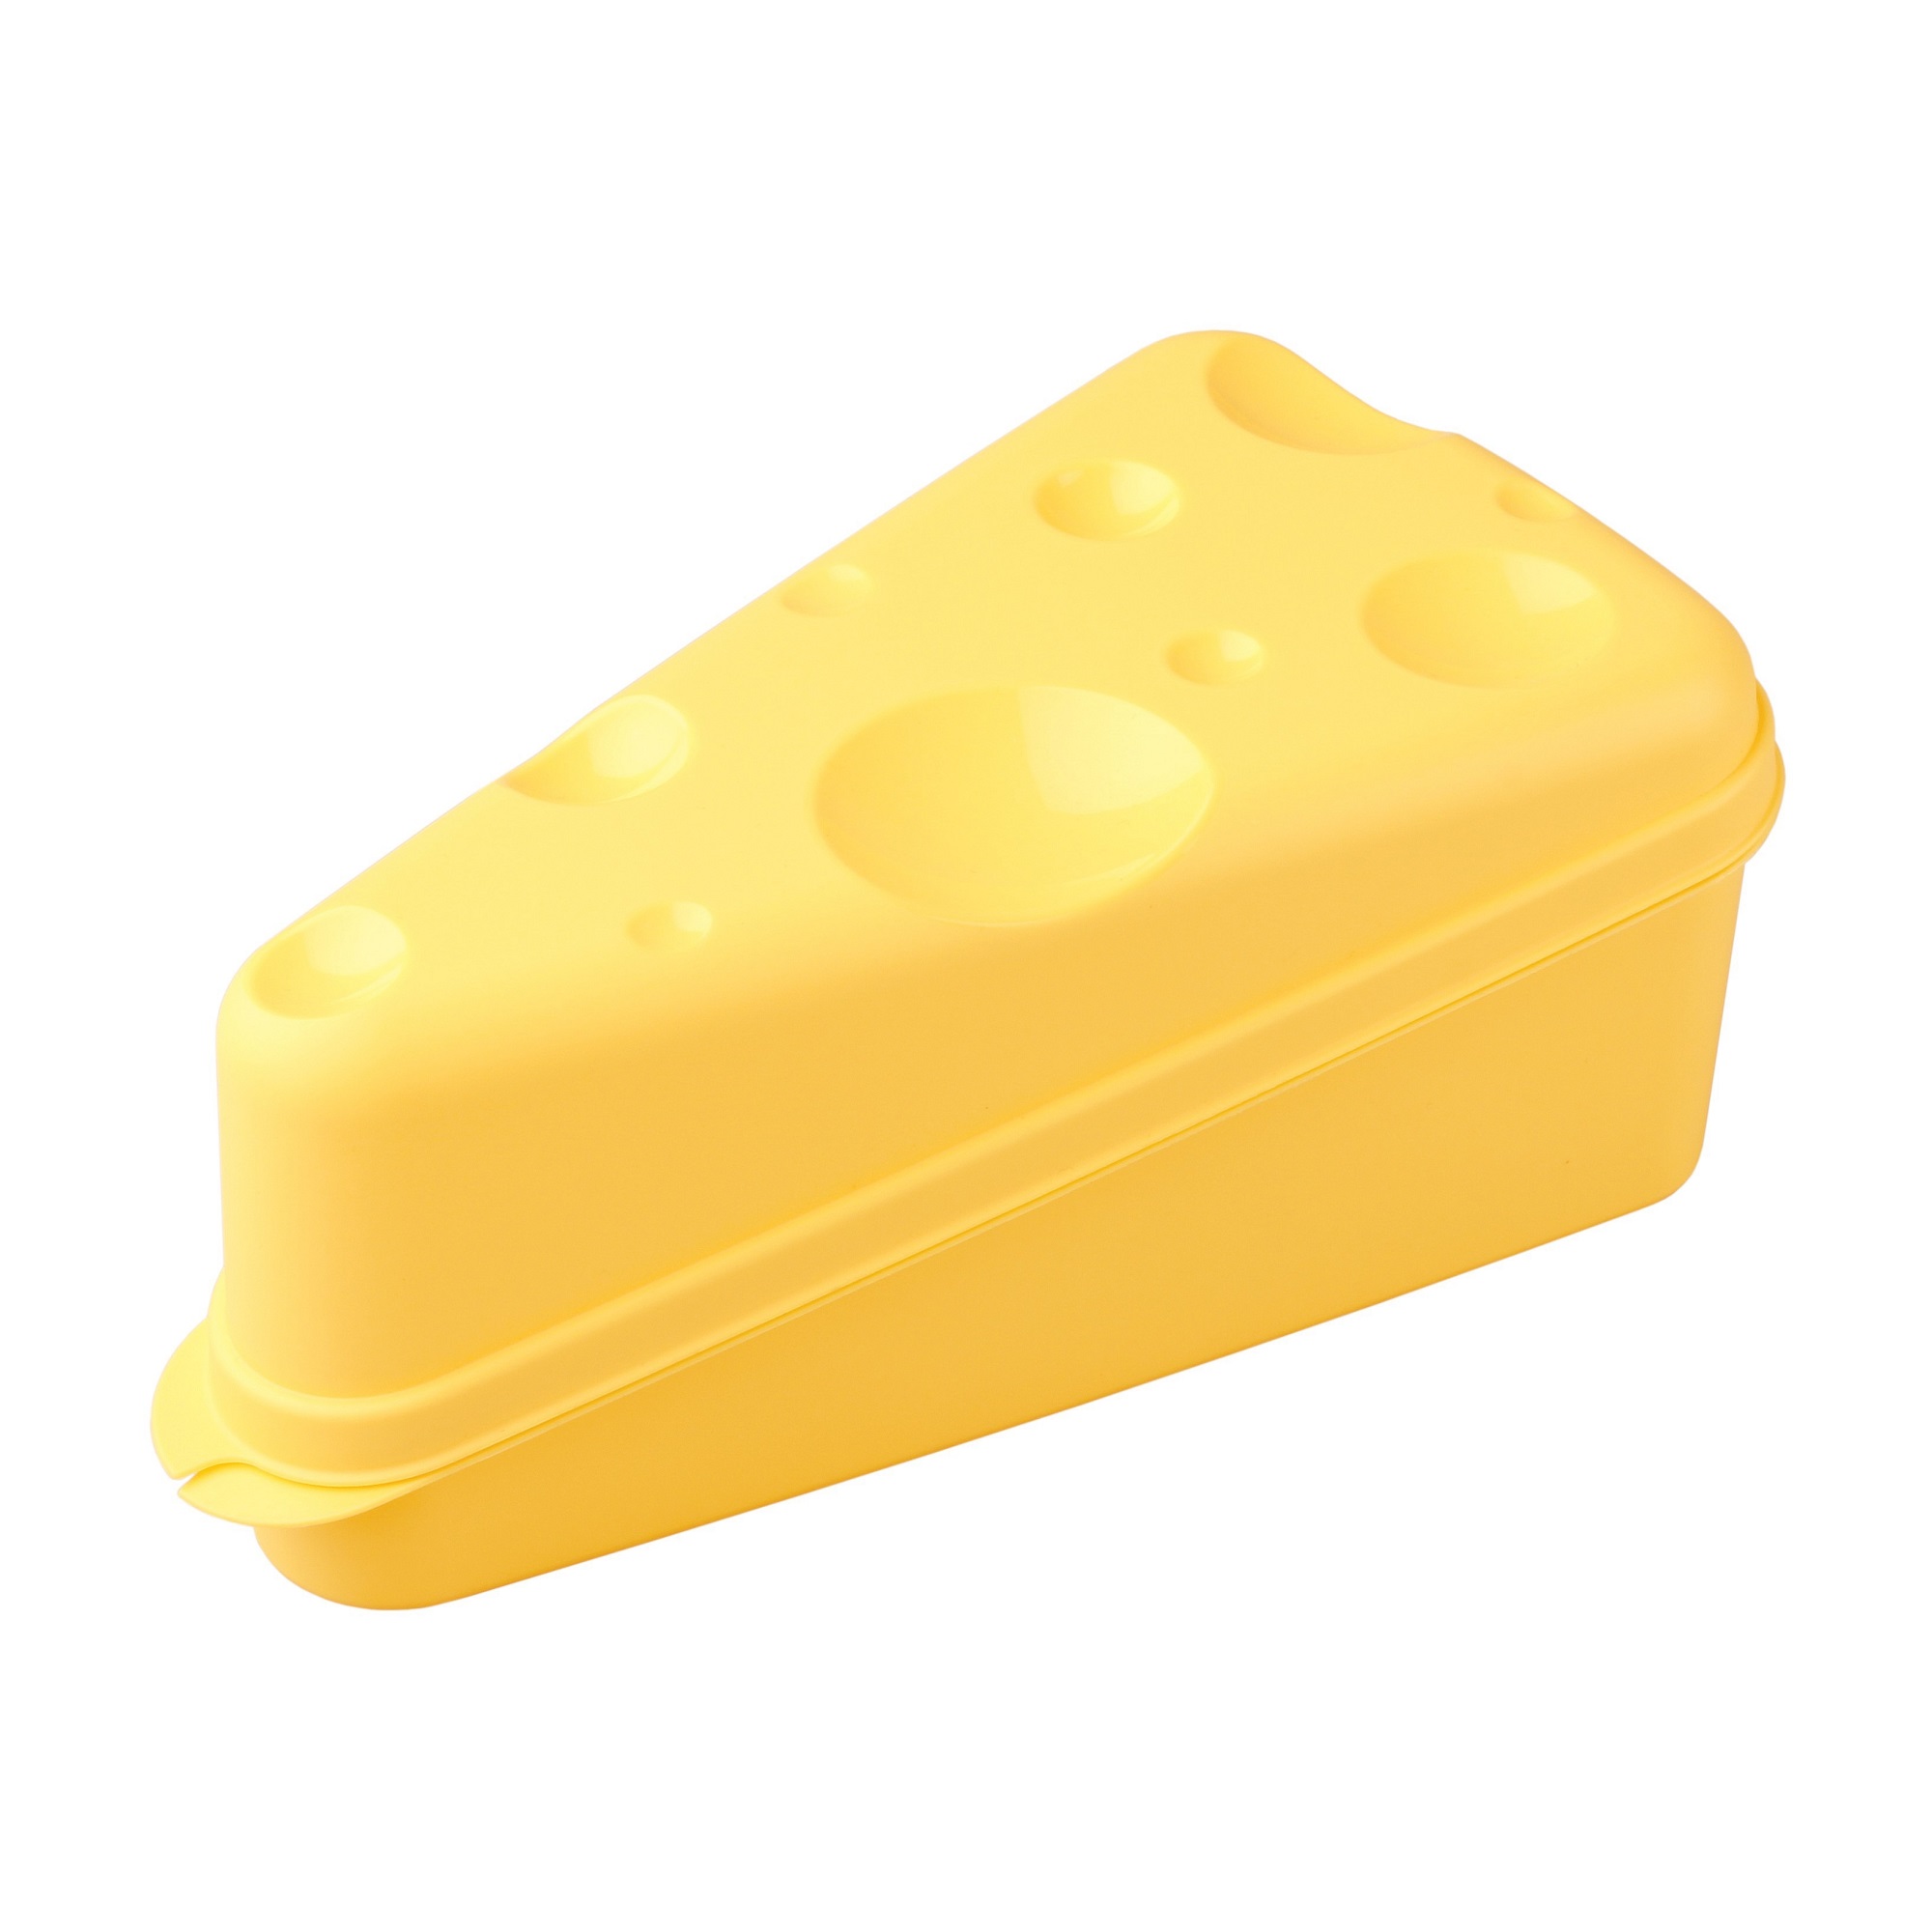 Контейнер Бытпласт для сыра (4312951) цена и фото